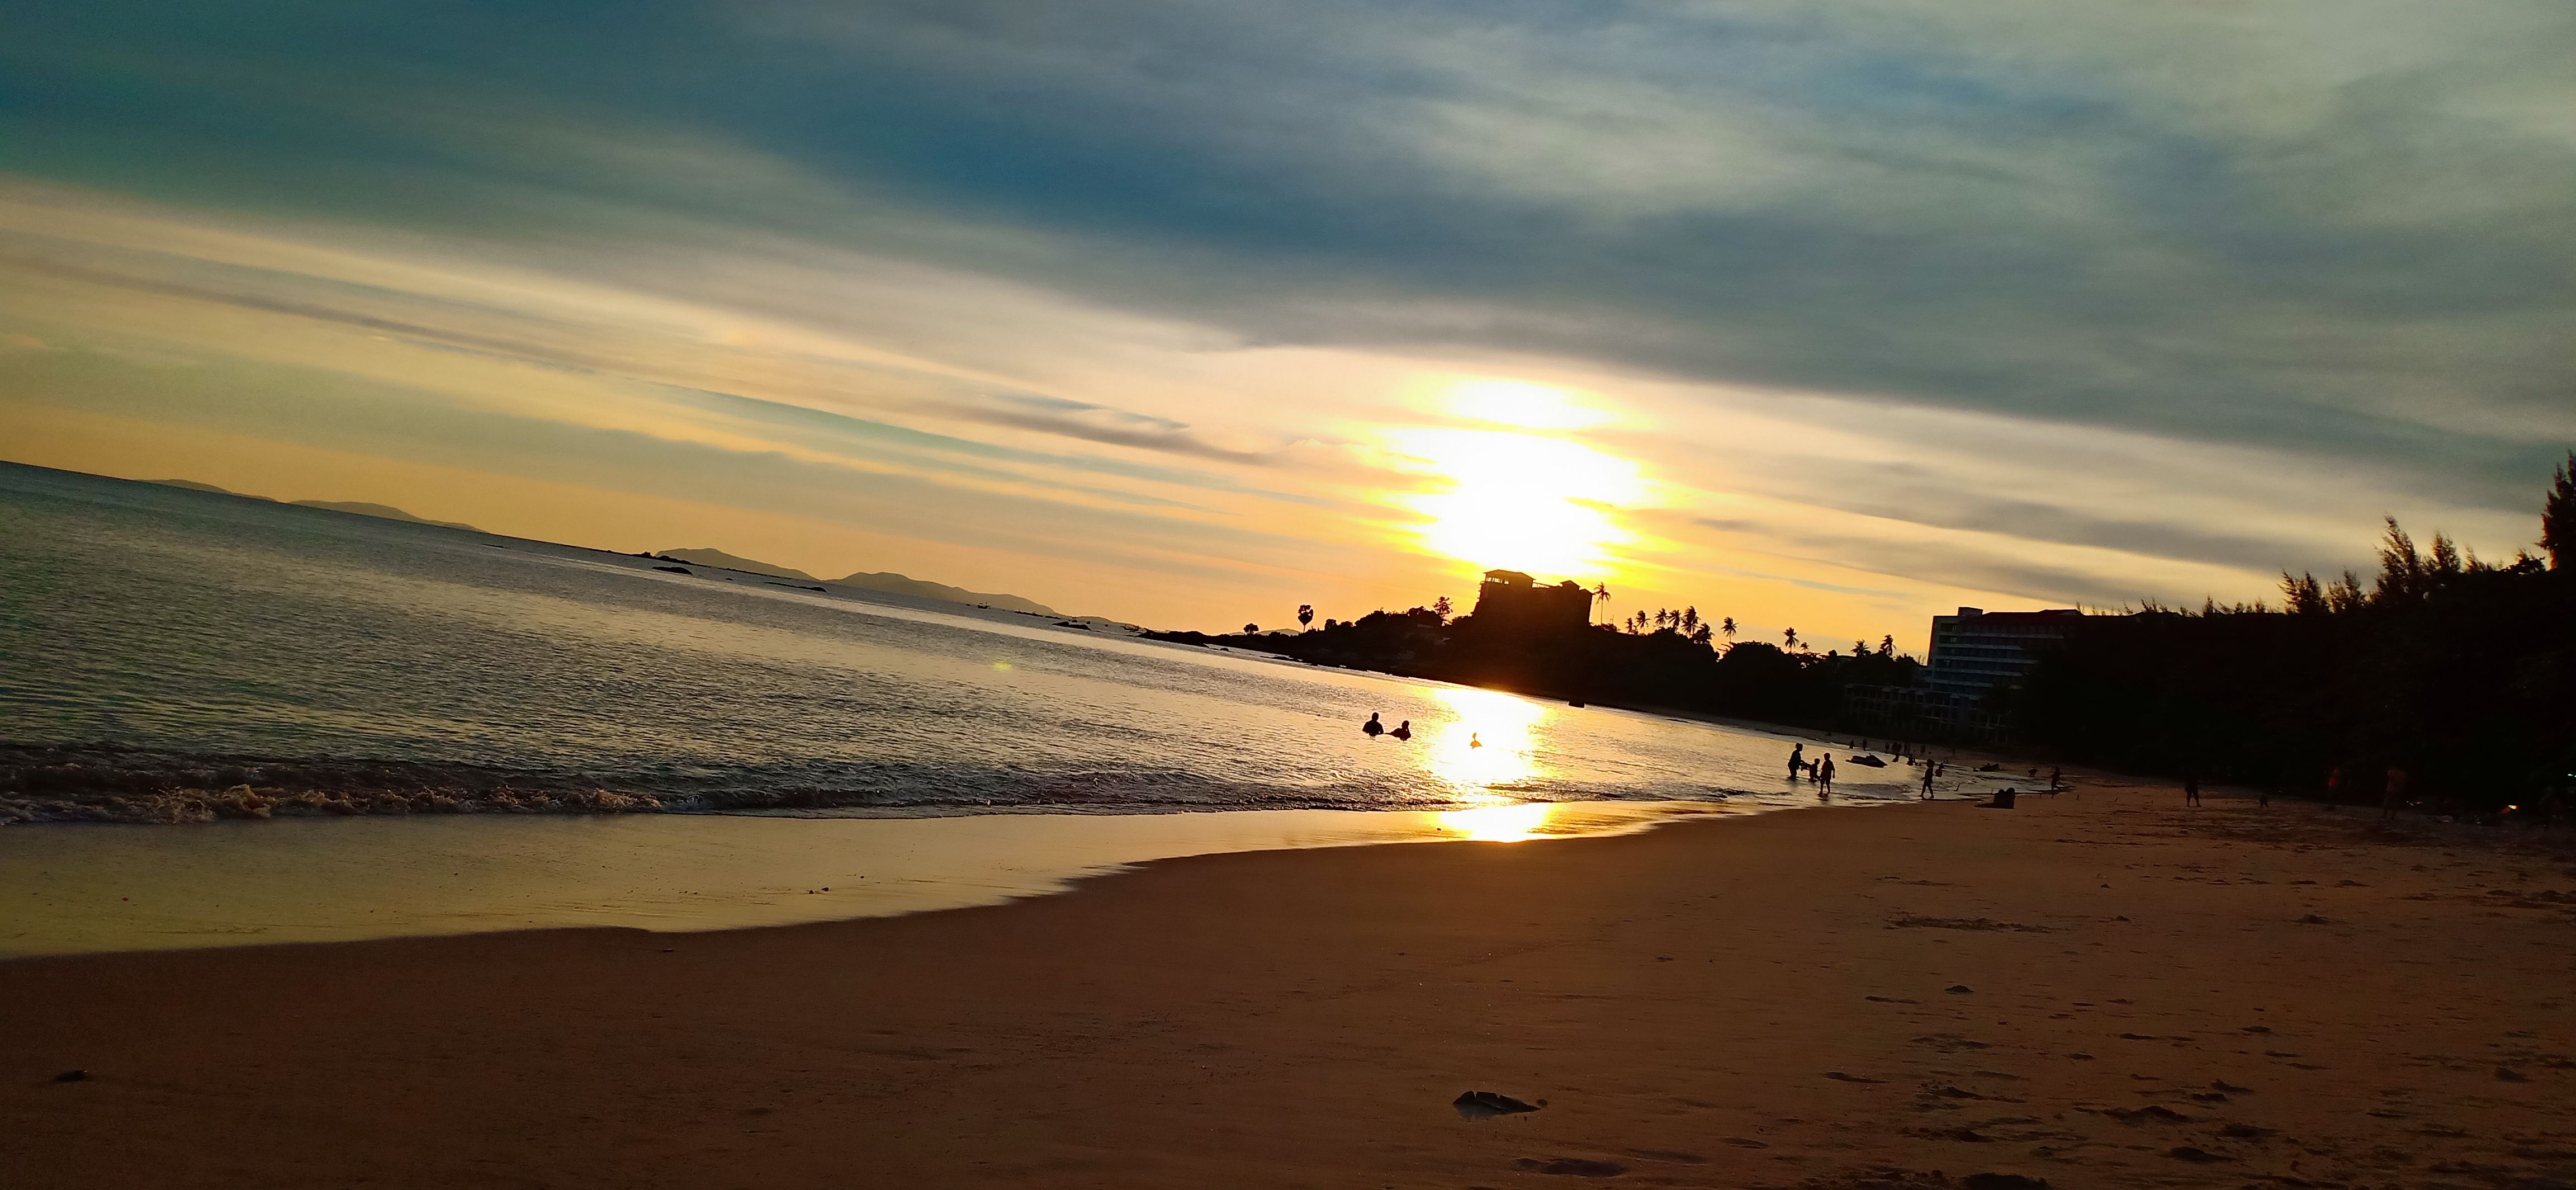 พระอาทิตย์กำลังจะลับขอบฟ้า ทีชายหาดพยูน เป็นชายหาดที่เป็นธรรมชาติ